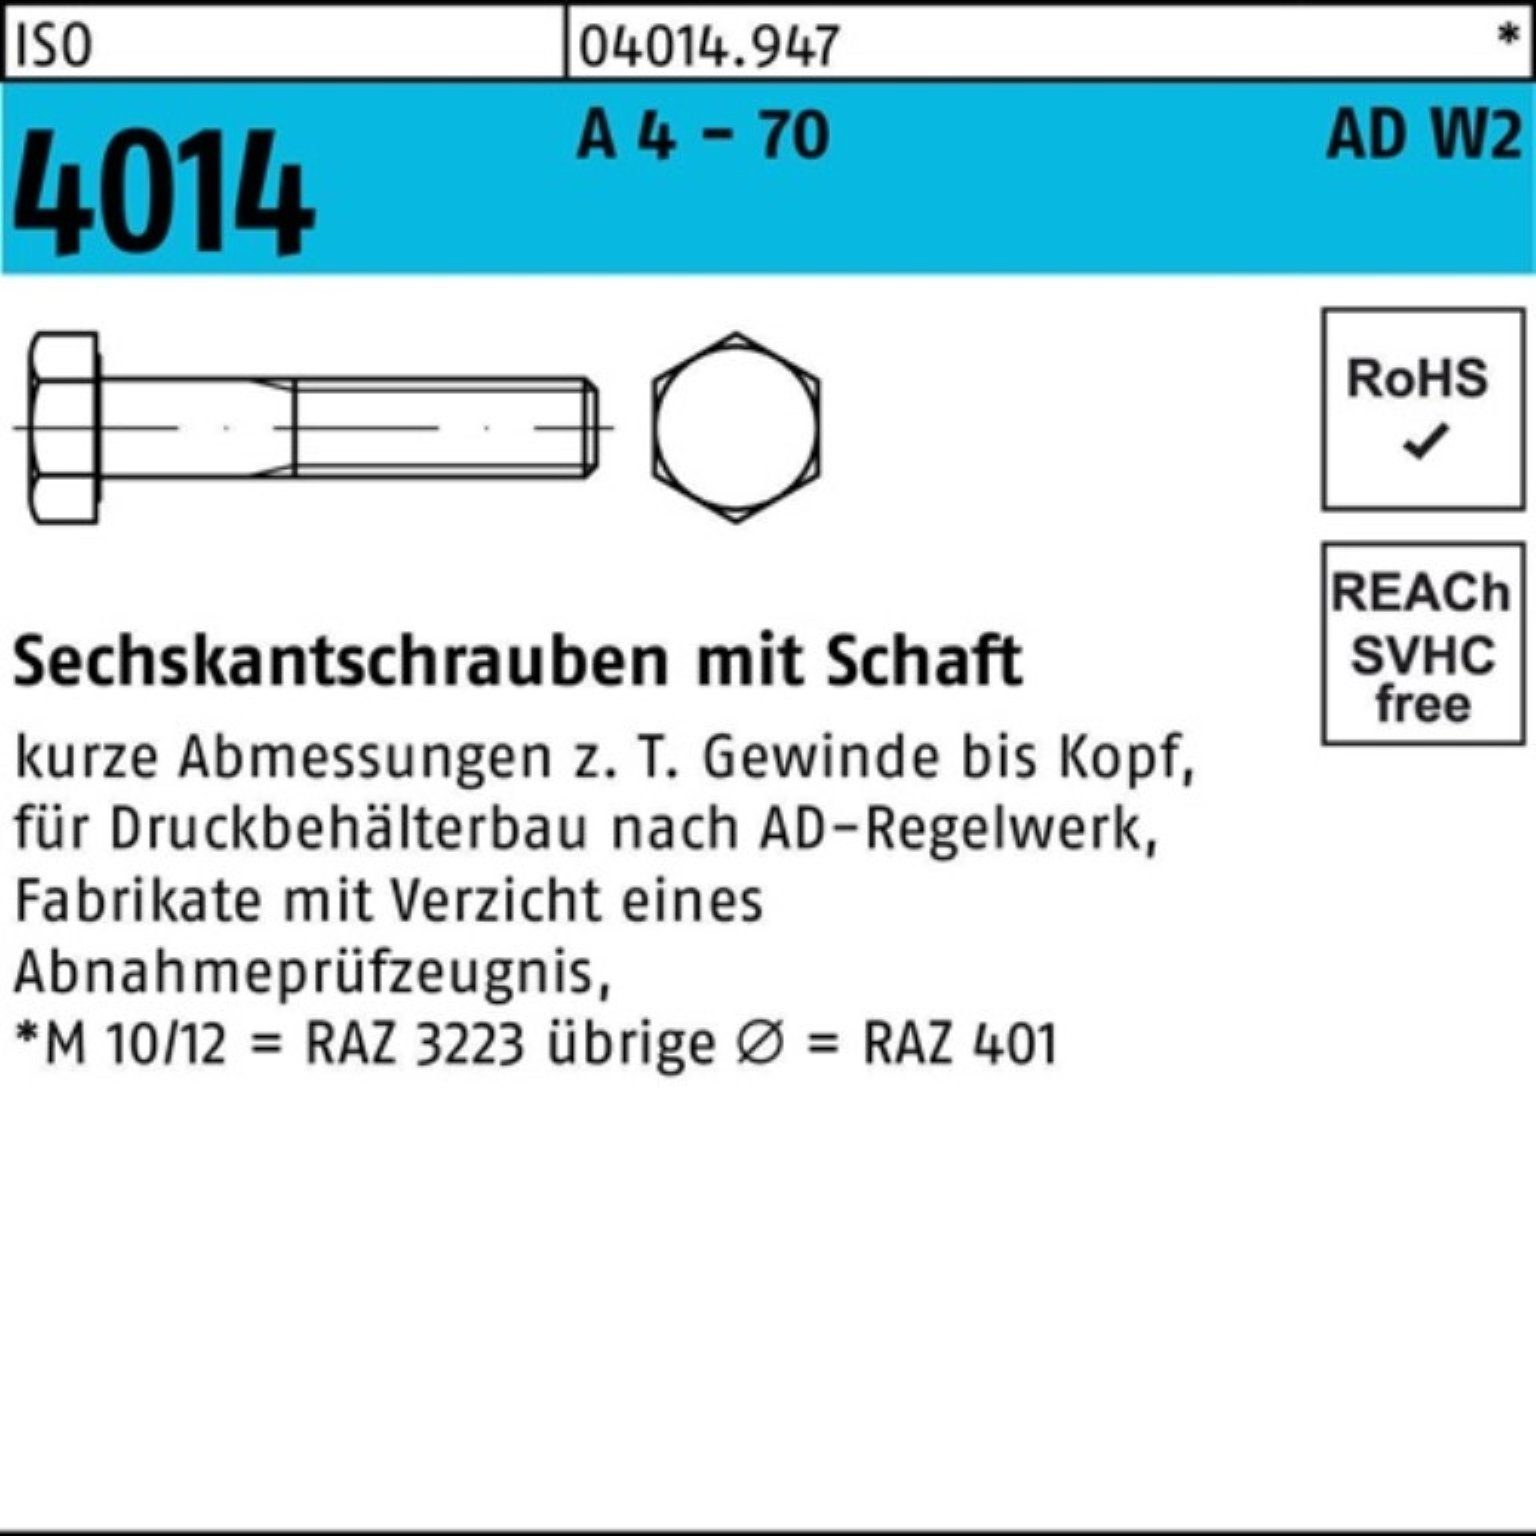 Bufab Sechskantschraube 100er Pack Sechskantschraube ISO 4014 Schaft M12x 55 A 4 - 70 AD-W2 50